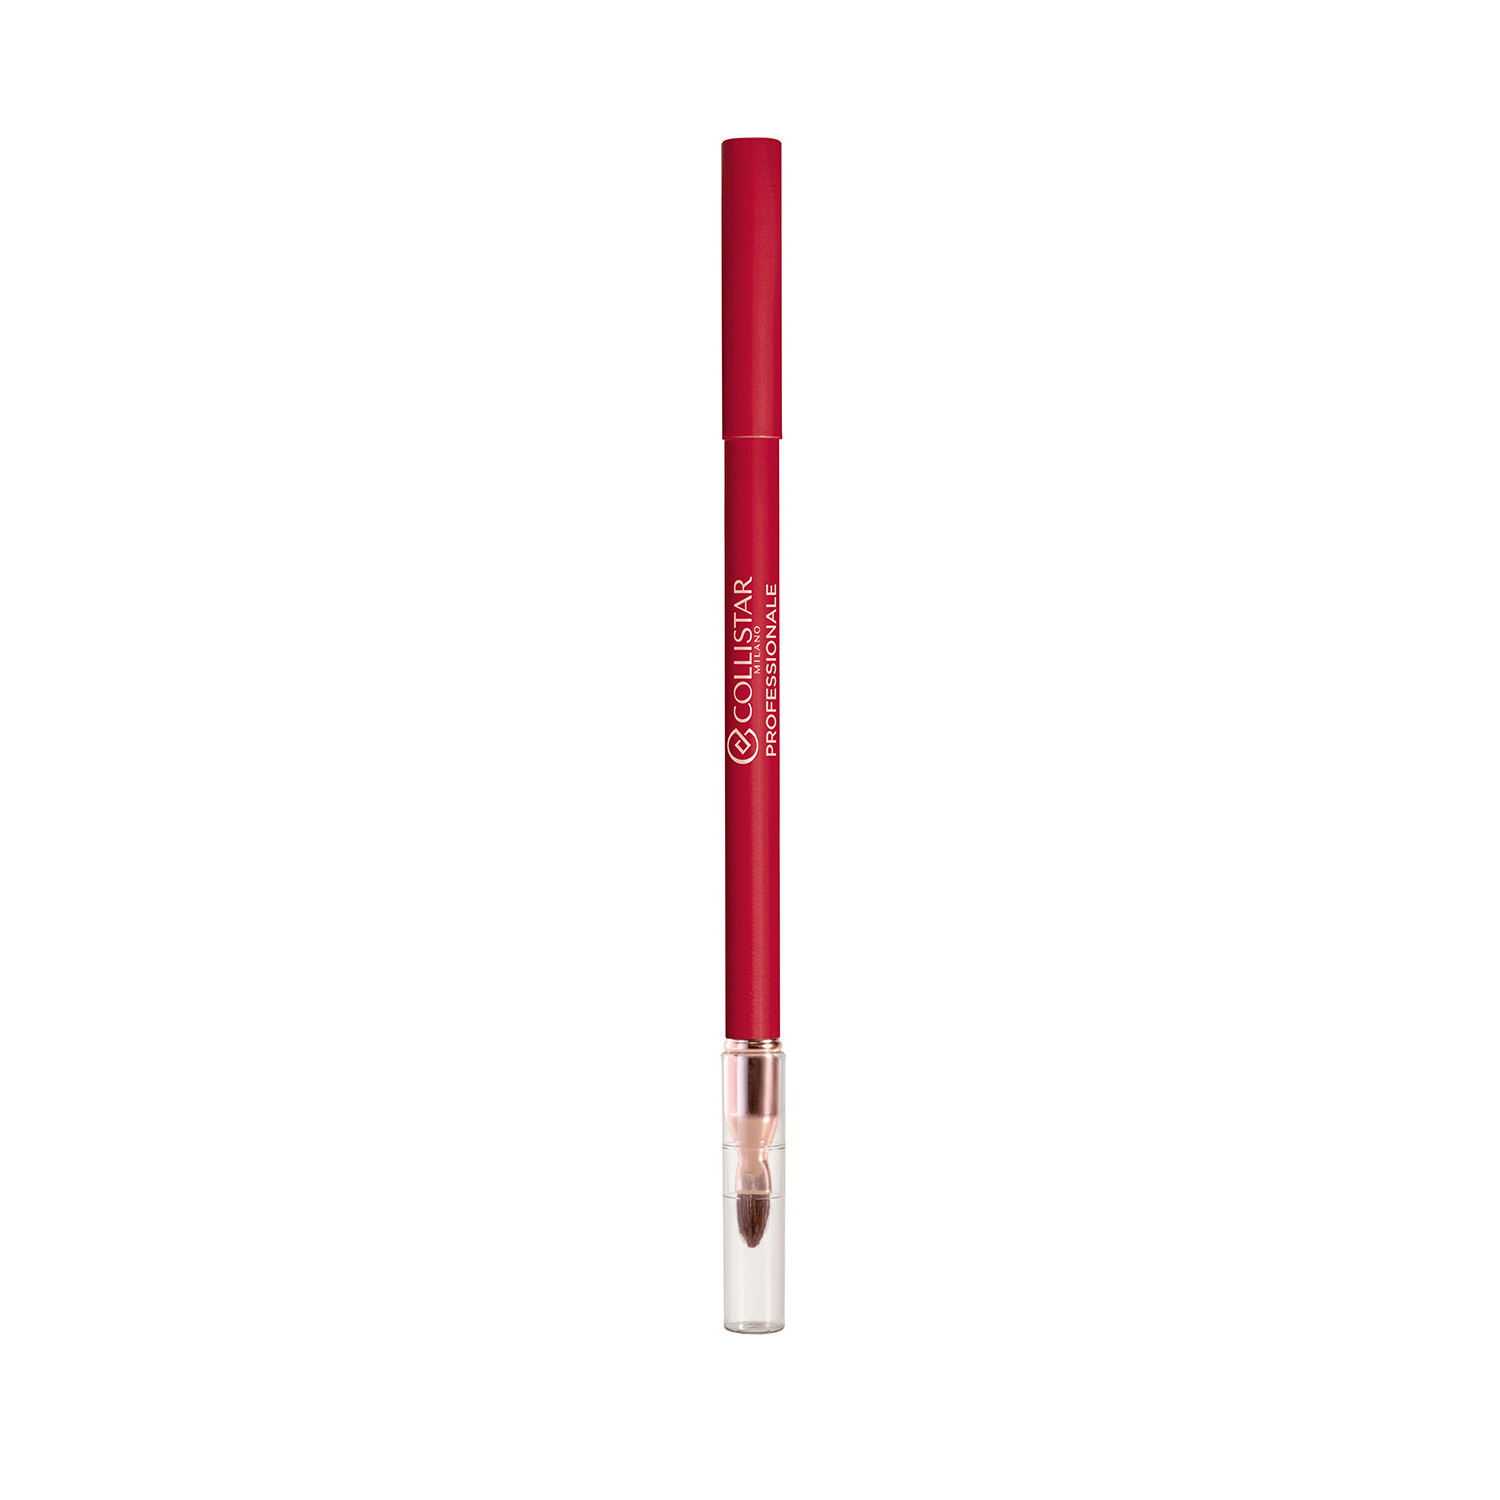 Collistar - Professionale matita labbra lunga durata - 16 Rubino, Rosso, large image number 0